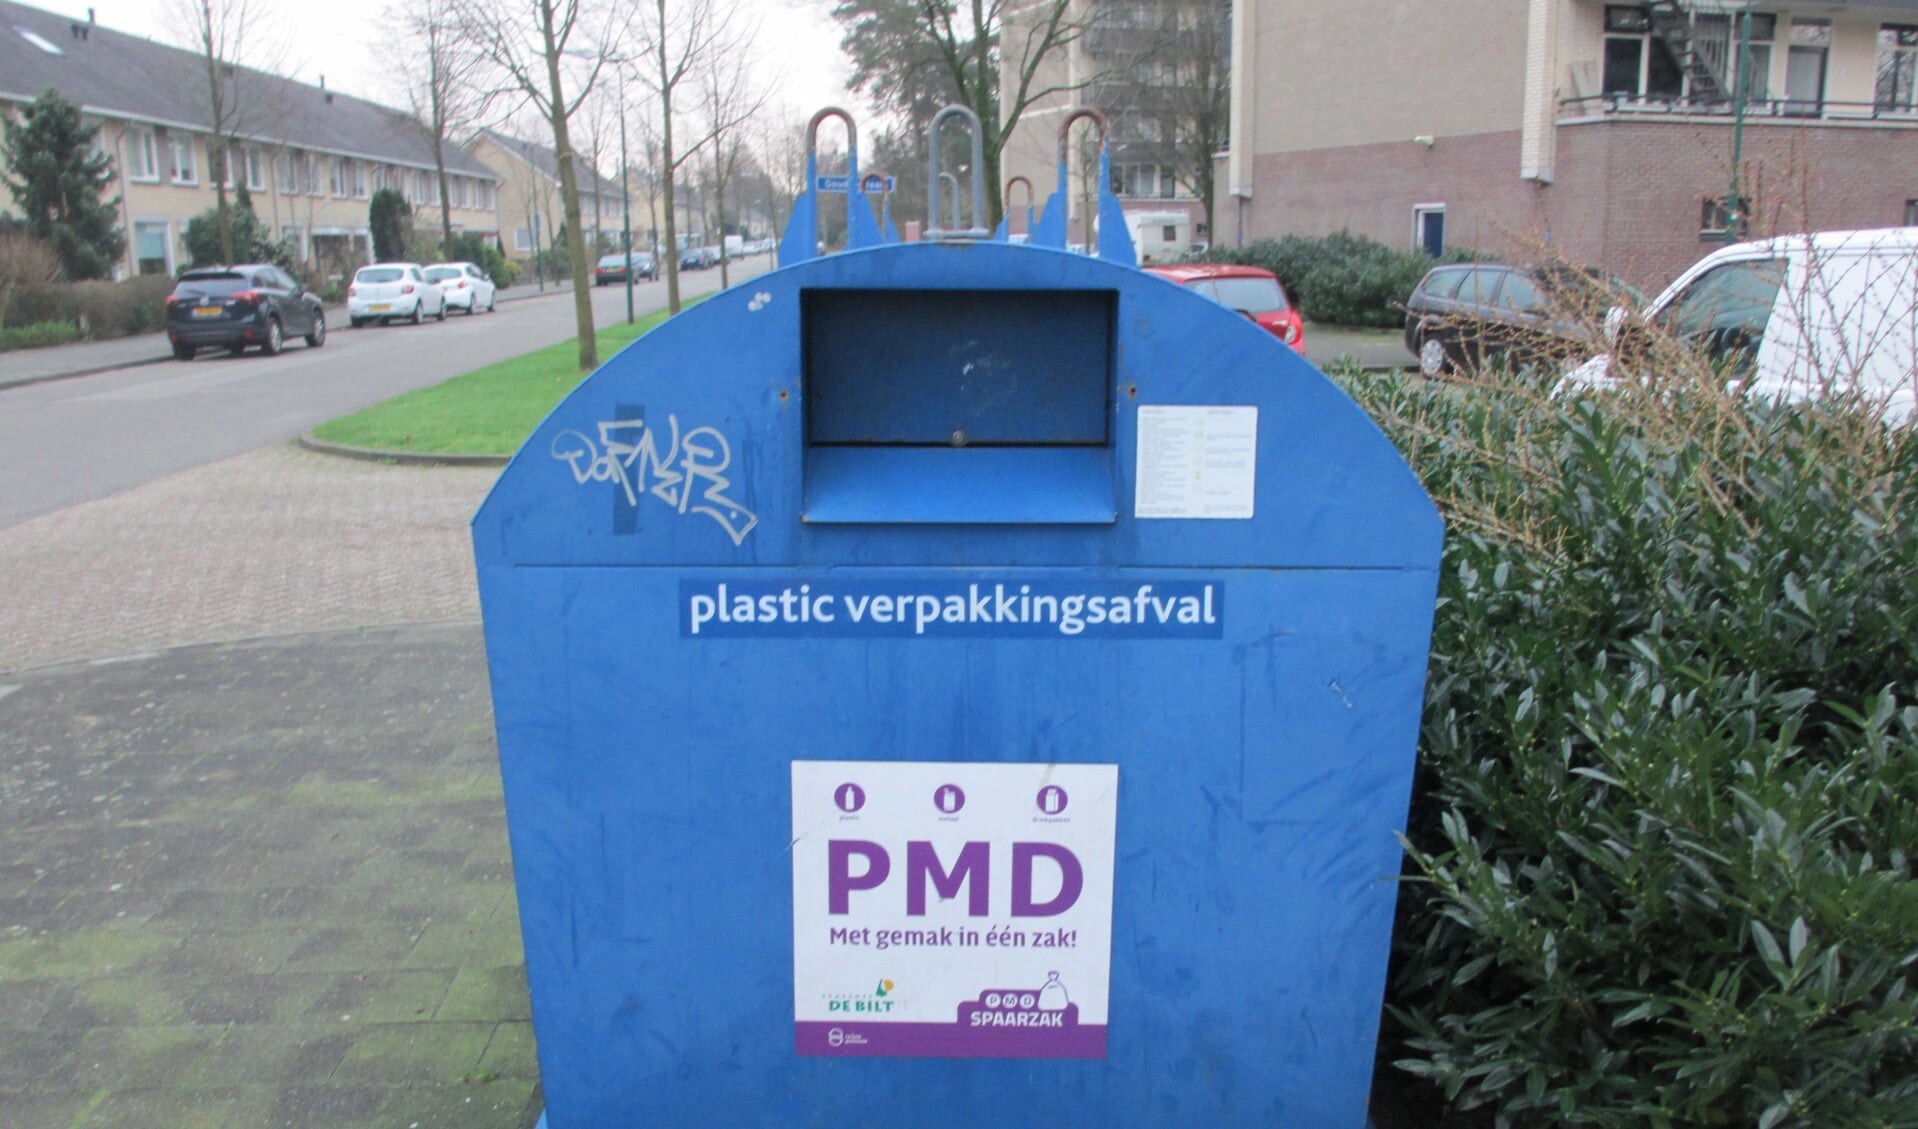 De container op de hoek van de Koperwieklaan / Goudvinklaan, waarop met grote letters ‘PMD’ is gezet. Rechts boven de verbleekte onjuiste instructie.